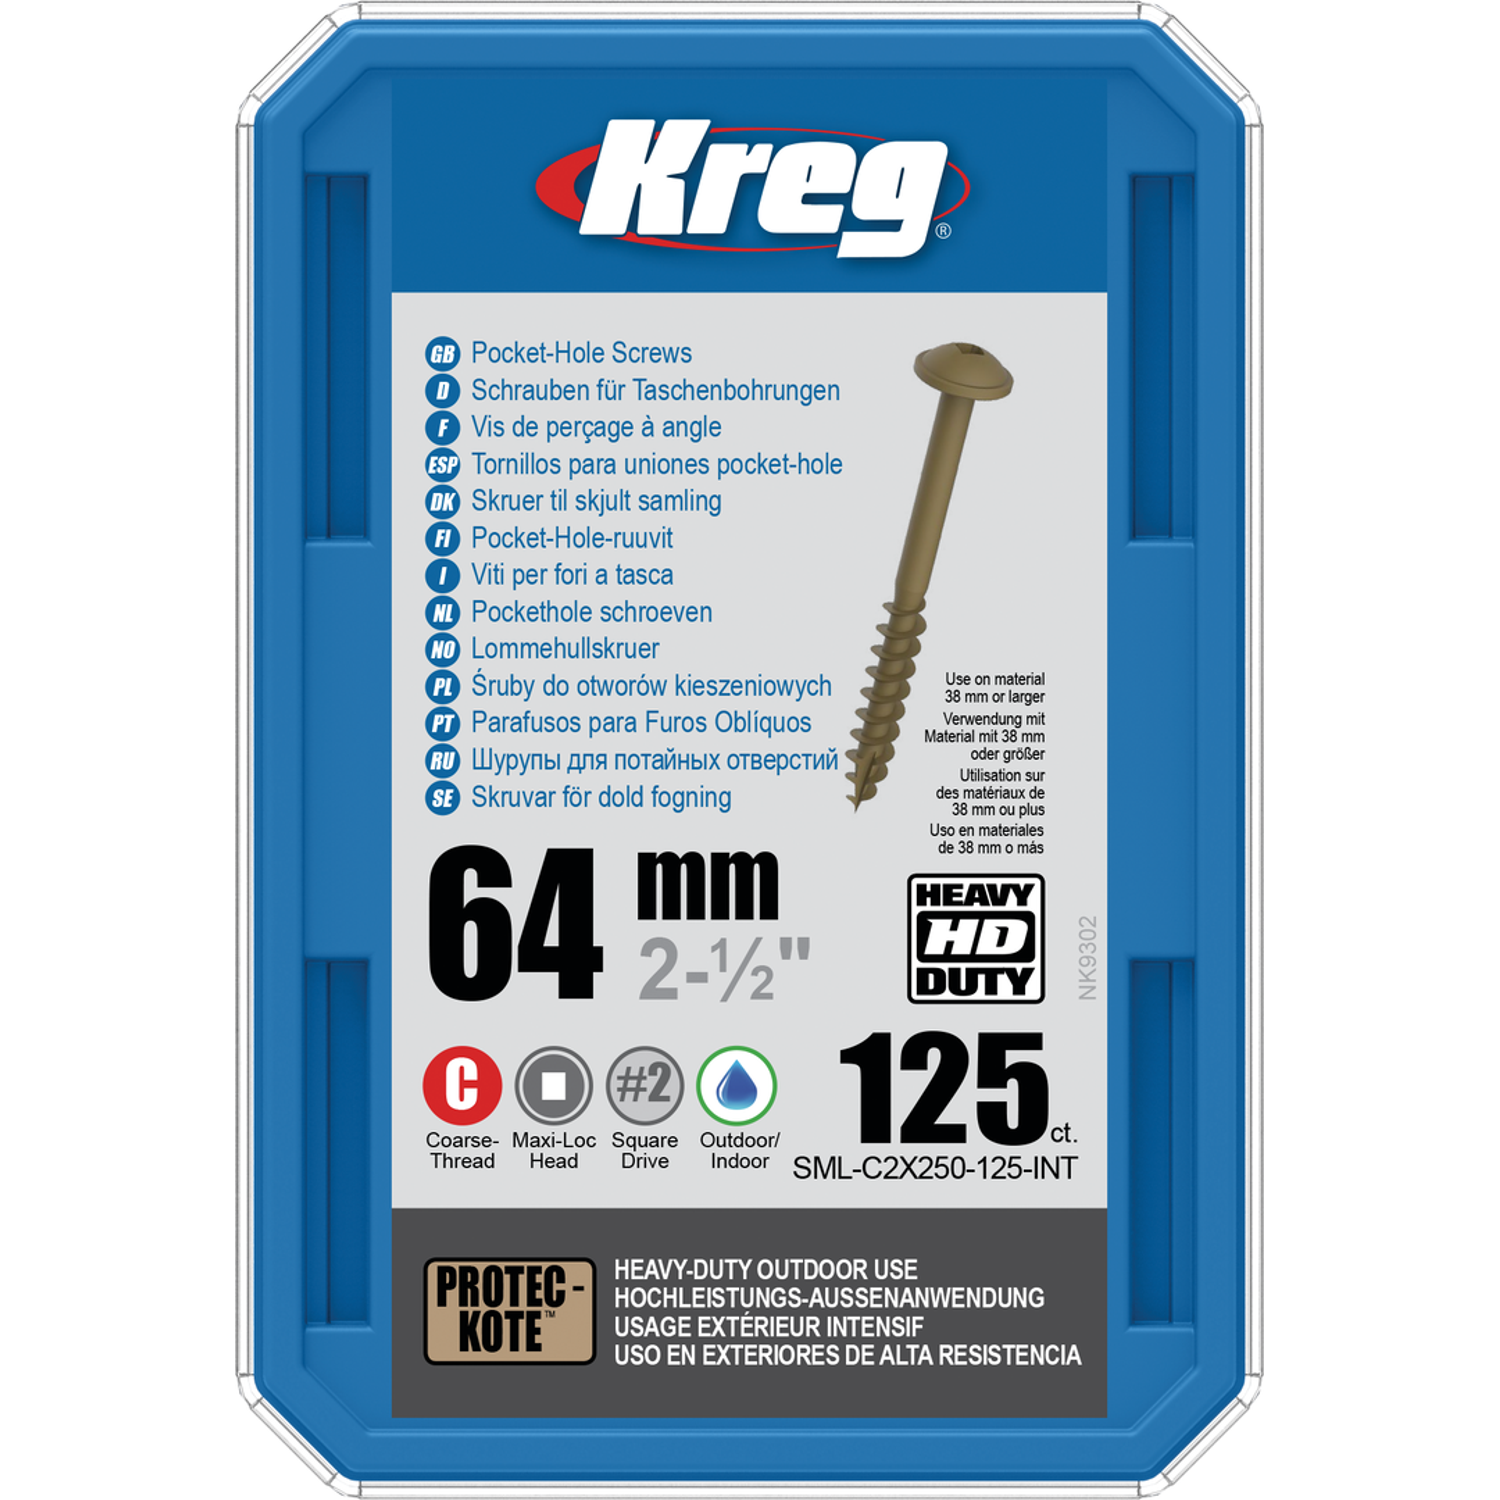 Billede af KREG HD Pocket-Hole skruer 64mm Protec-Kote Maxi-Loc grov gevind 125stk